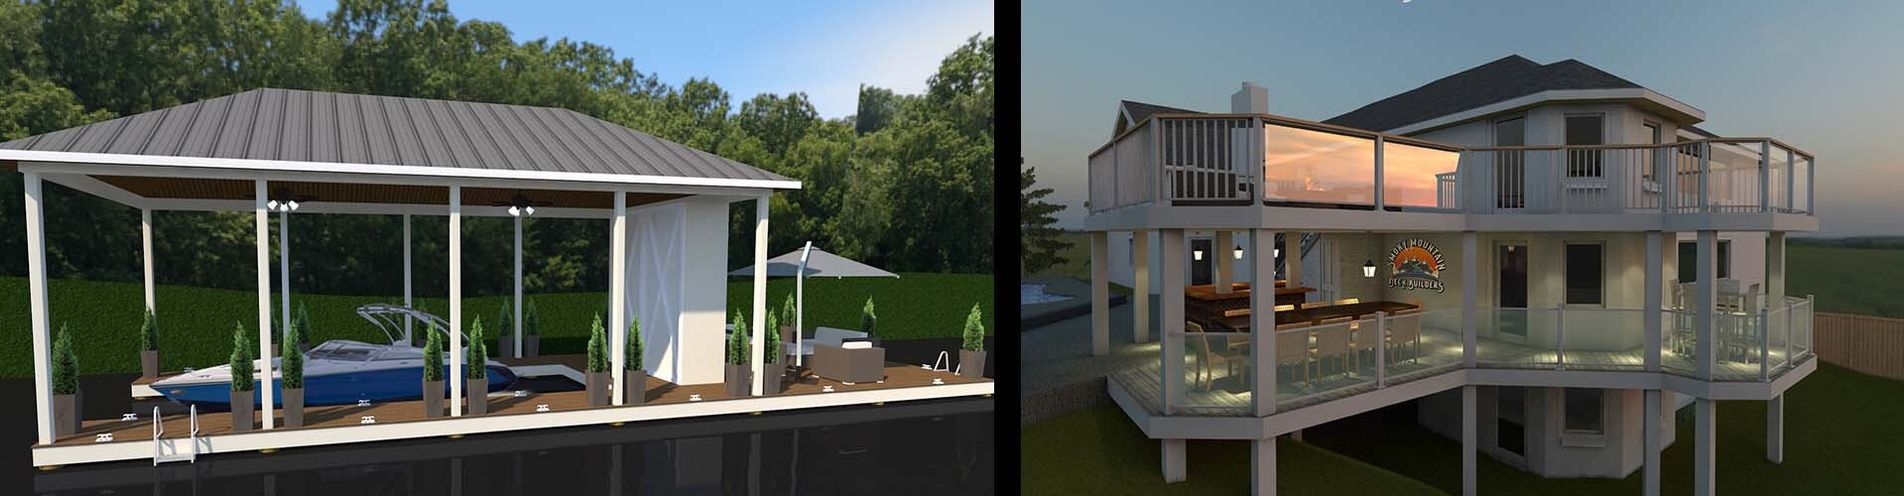 3-D dock and deck renderings